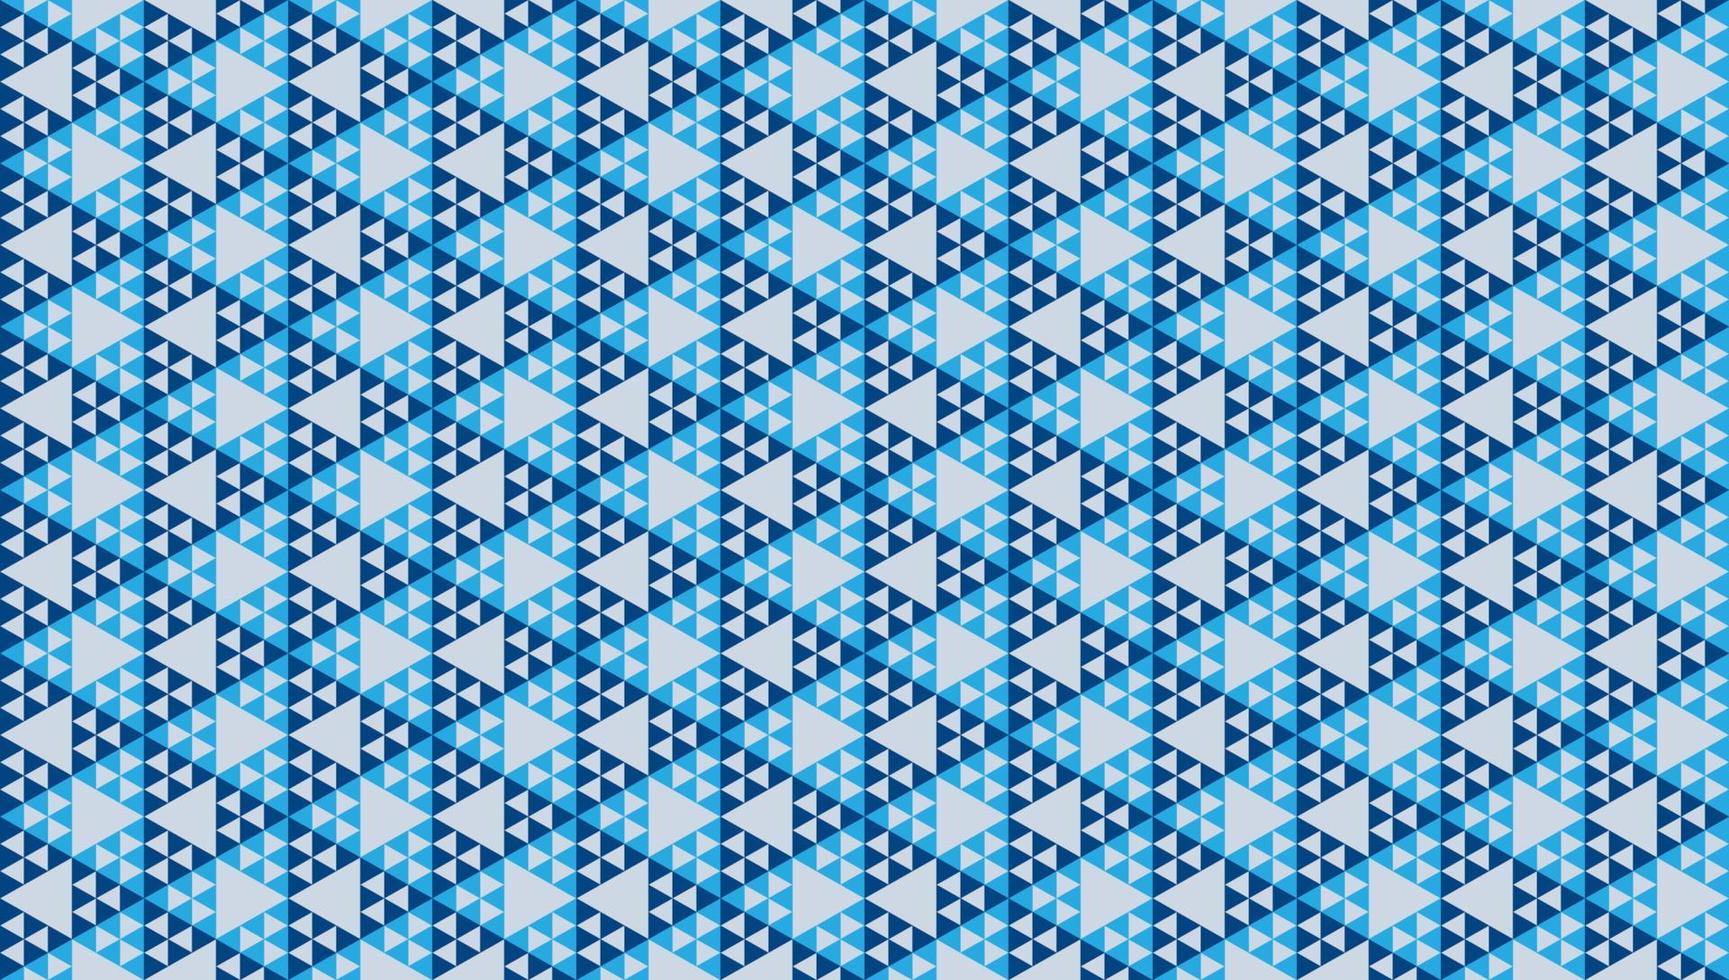 abstract veelhoekige driehoeken ornament. blauw driehoekig vormen. meetkundig naadloos patroon ontwerp sjabloon. vector